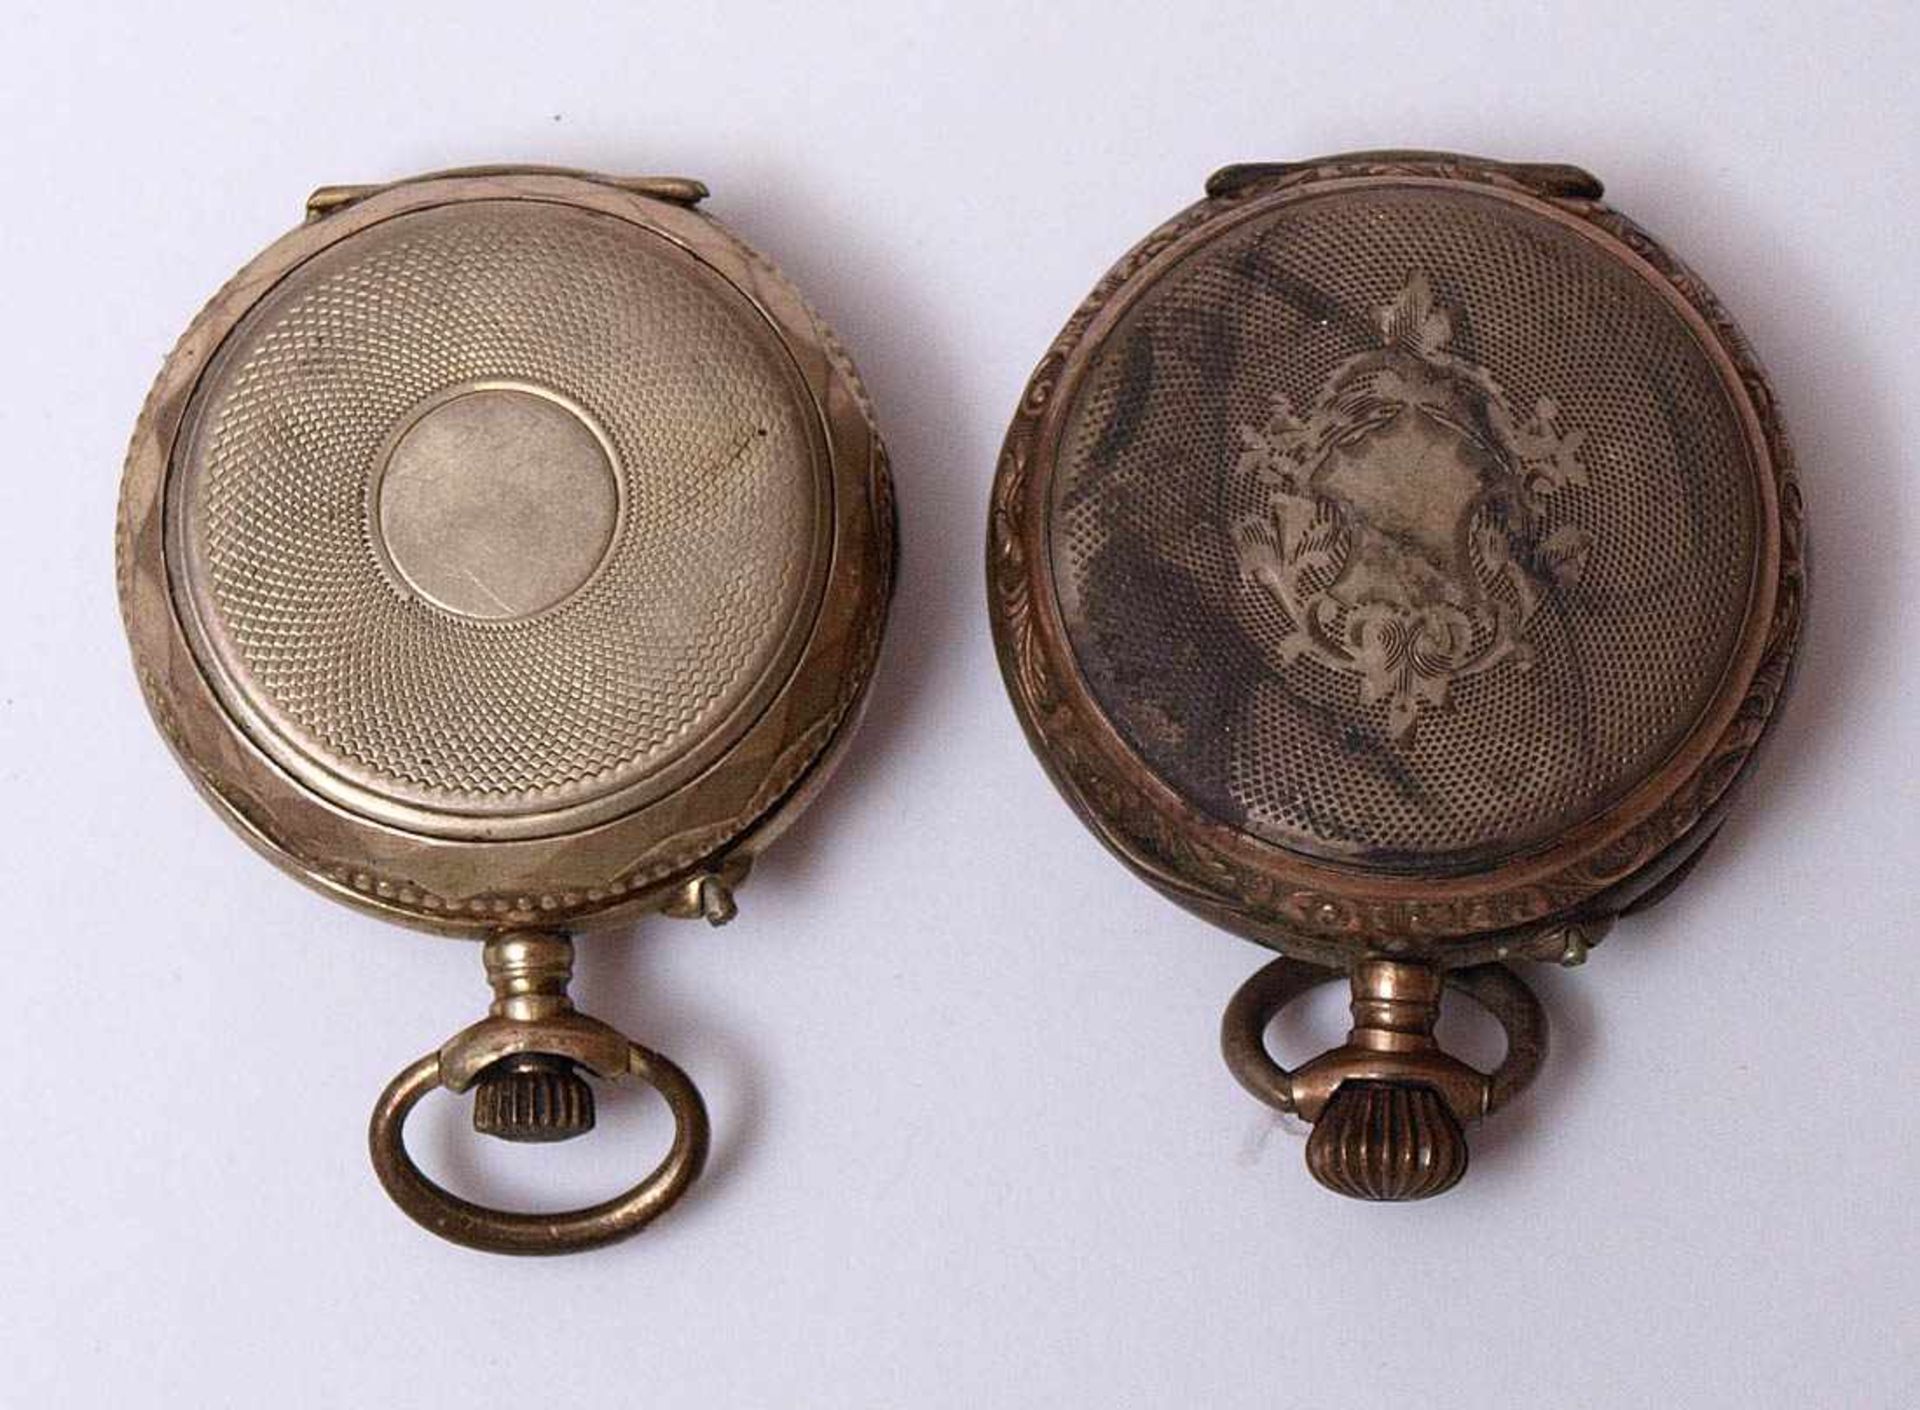 Zwei Damentaschenuhren Rundes Gehäuse aus Silber 800 mit reliefiertem Rand, guillochierter - Bild 2 aus 3